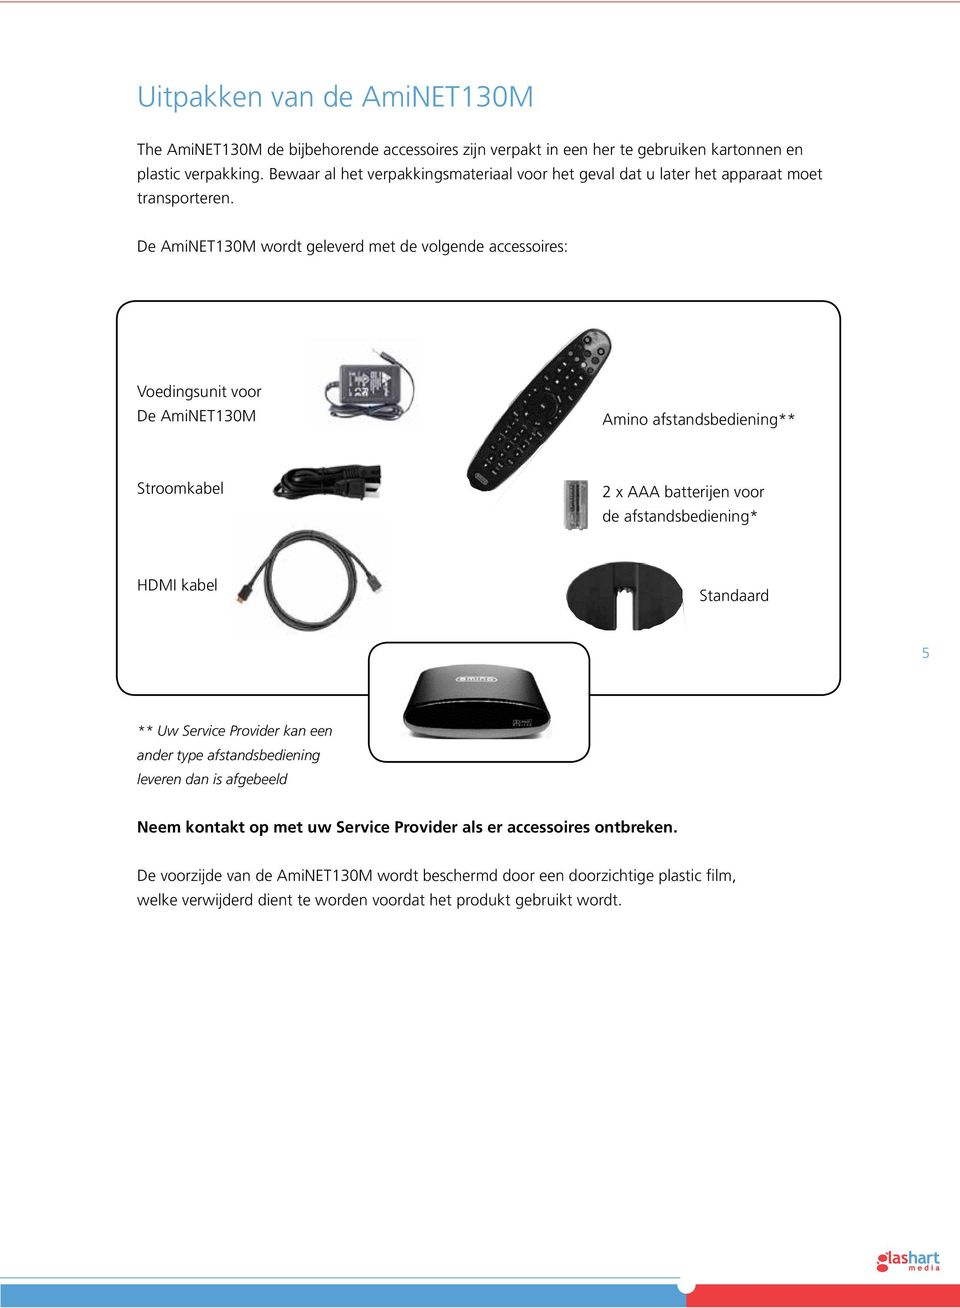 De AmiNET130M wordt geleverd met de volgende accessoires: Voedingsunit voor De AmiNET130M Amino afstandsbediening** Stroomkabel 2 x AAA batterijen voor de afstandsbediening* HDMI kabel